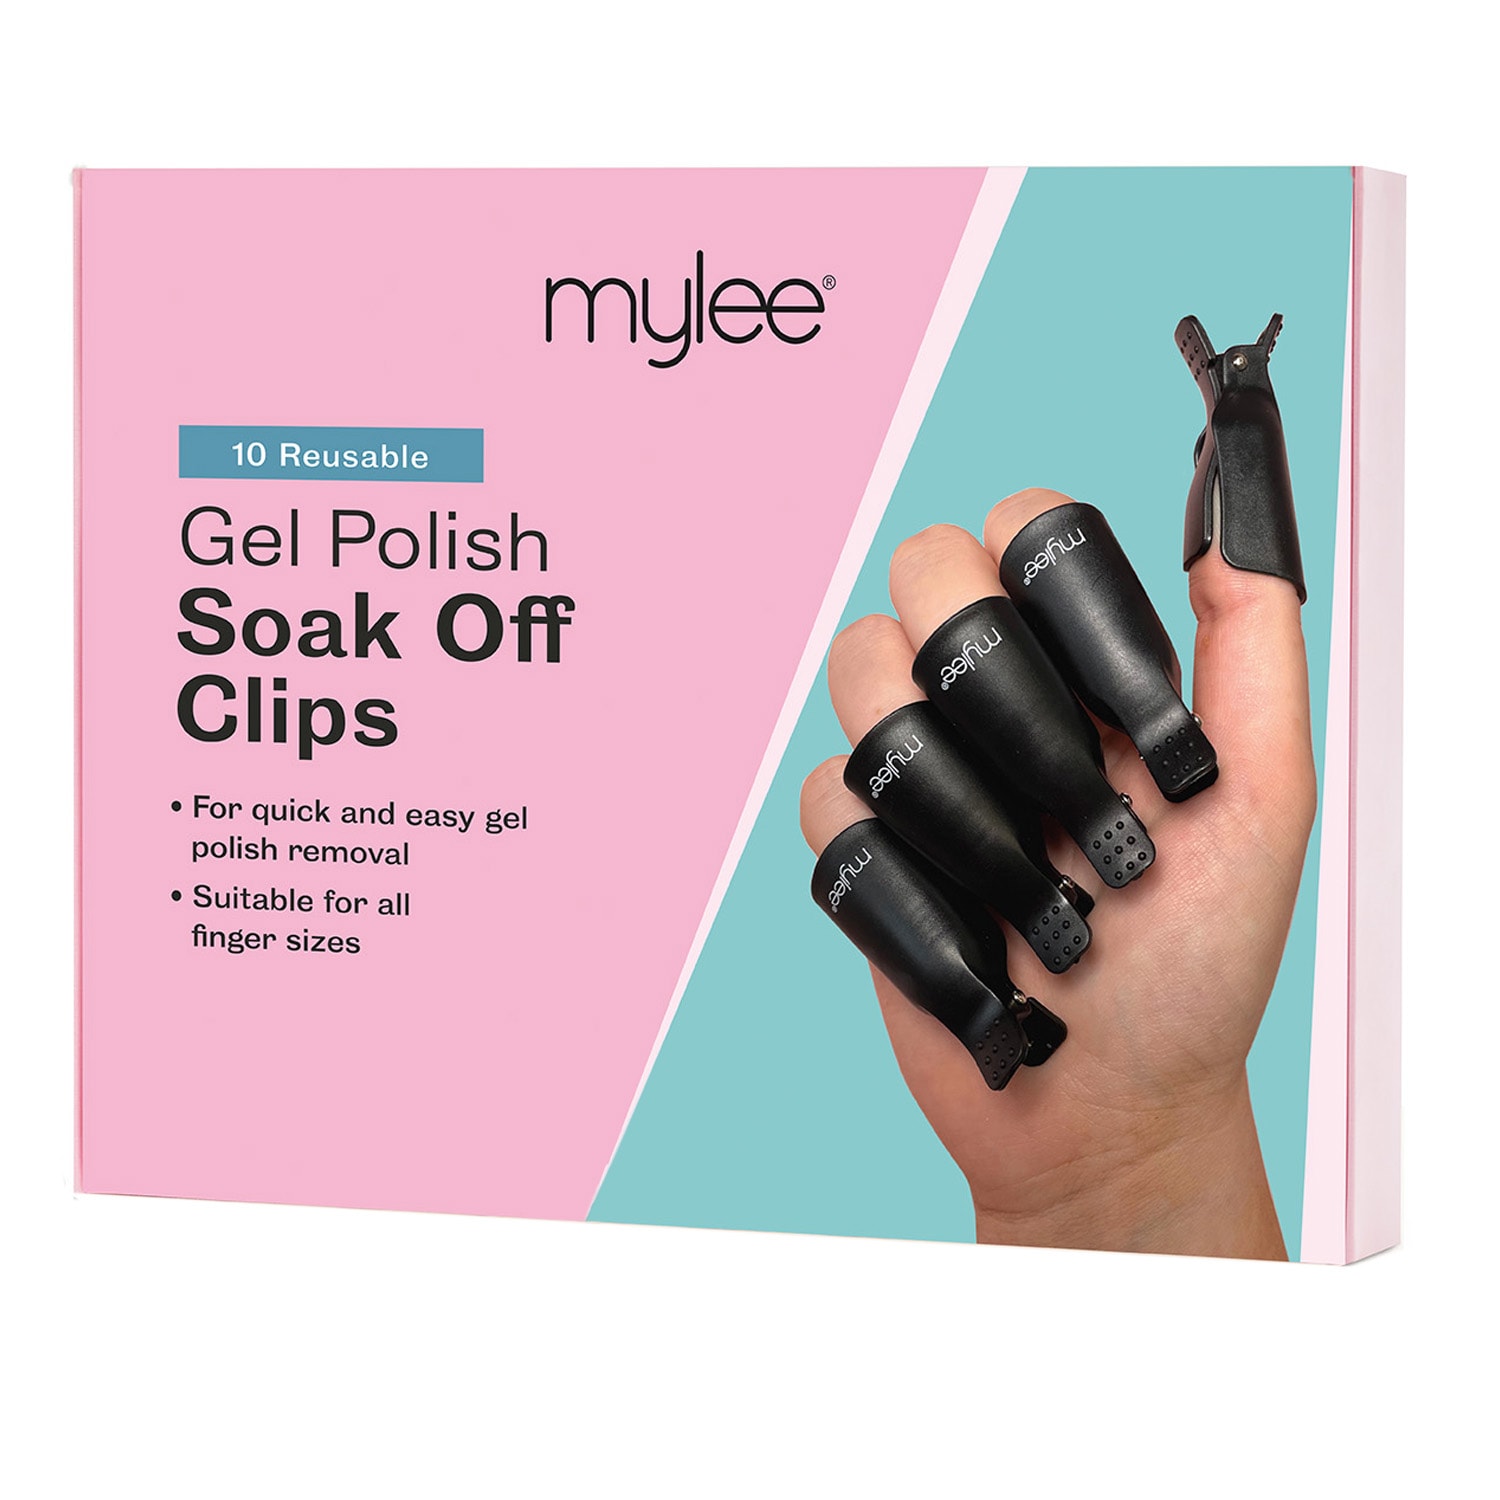 Soac-off clips for gel nail polish